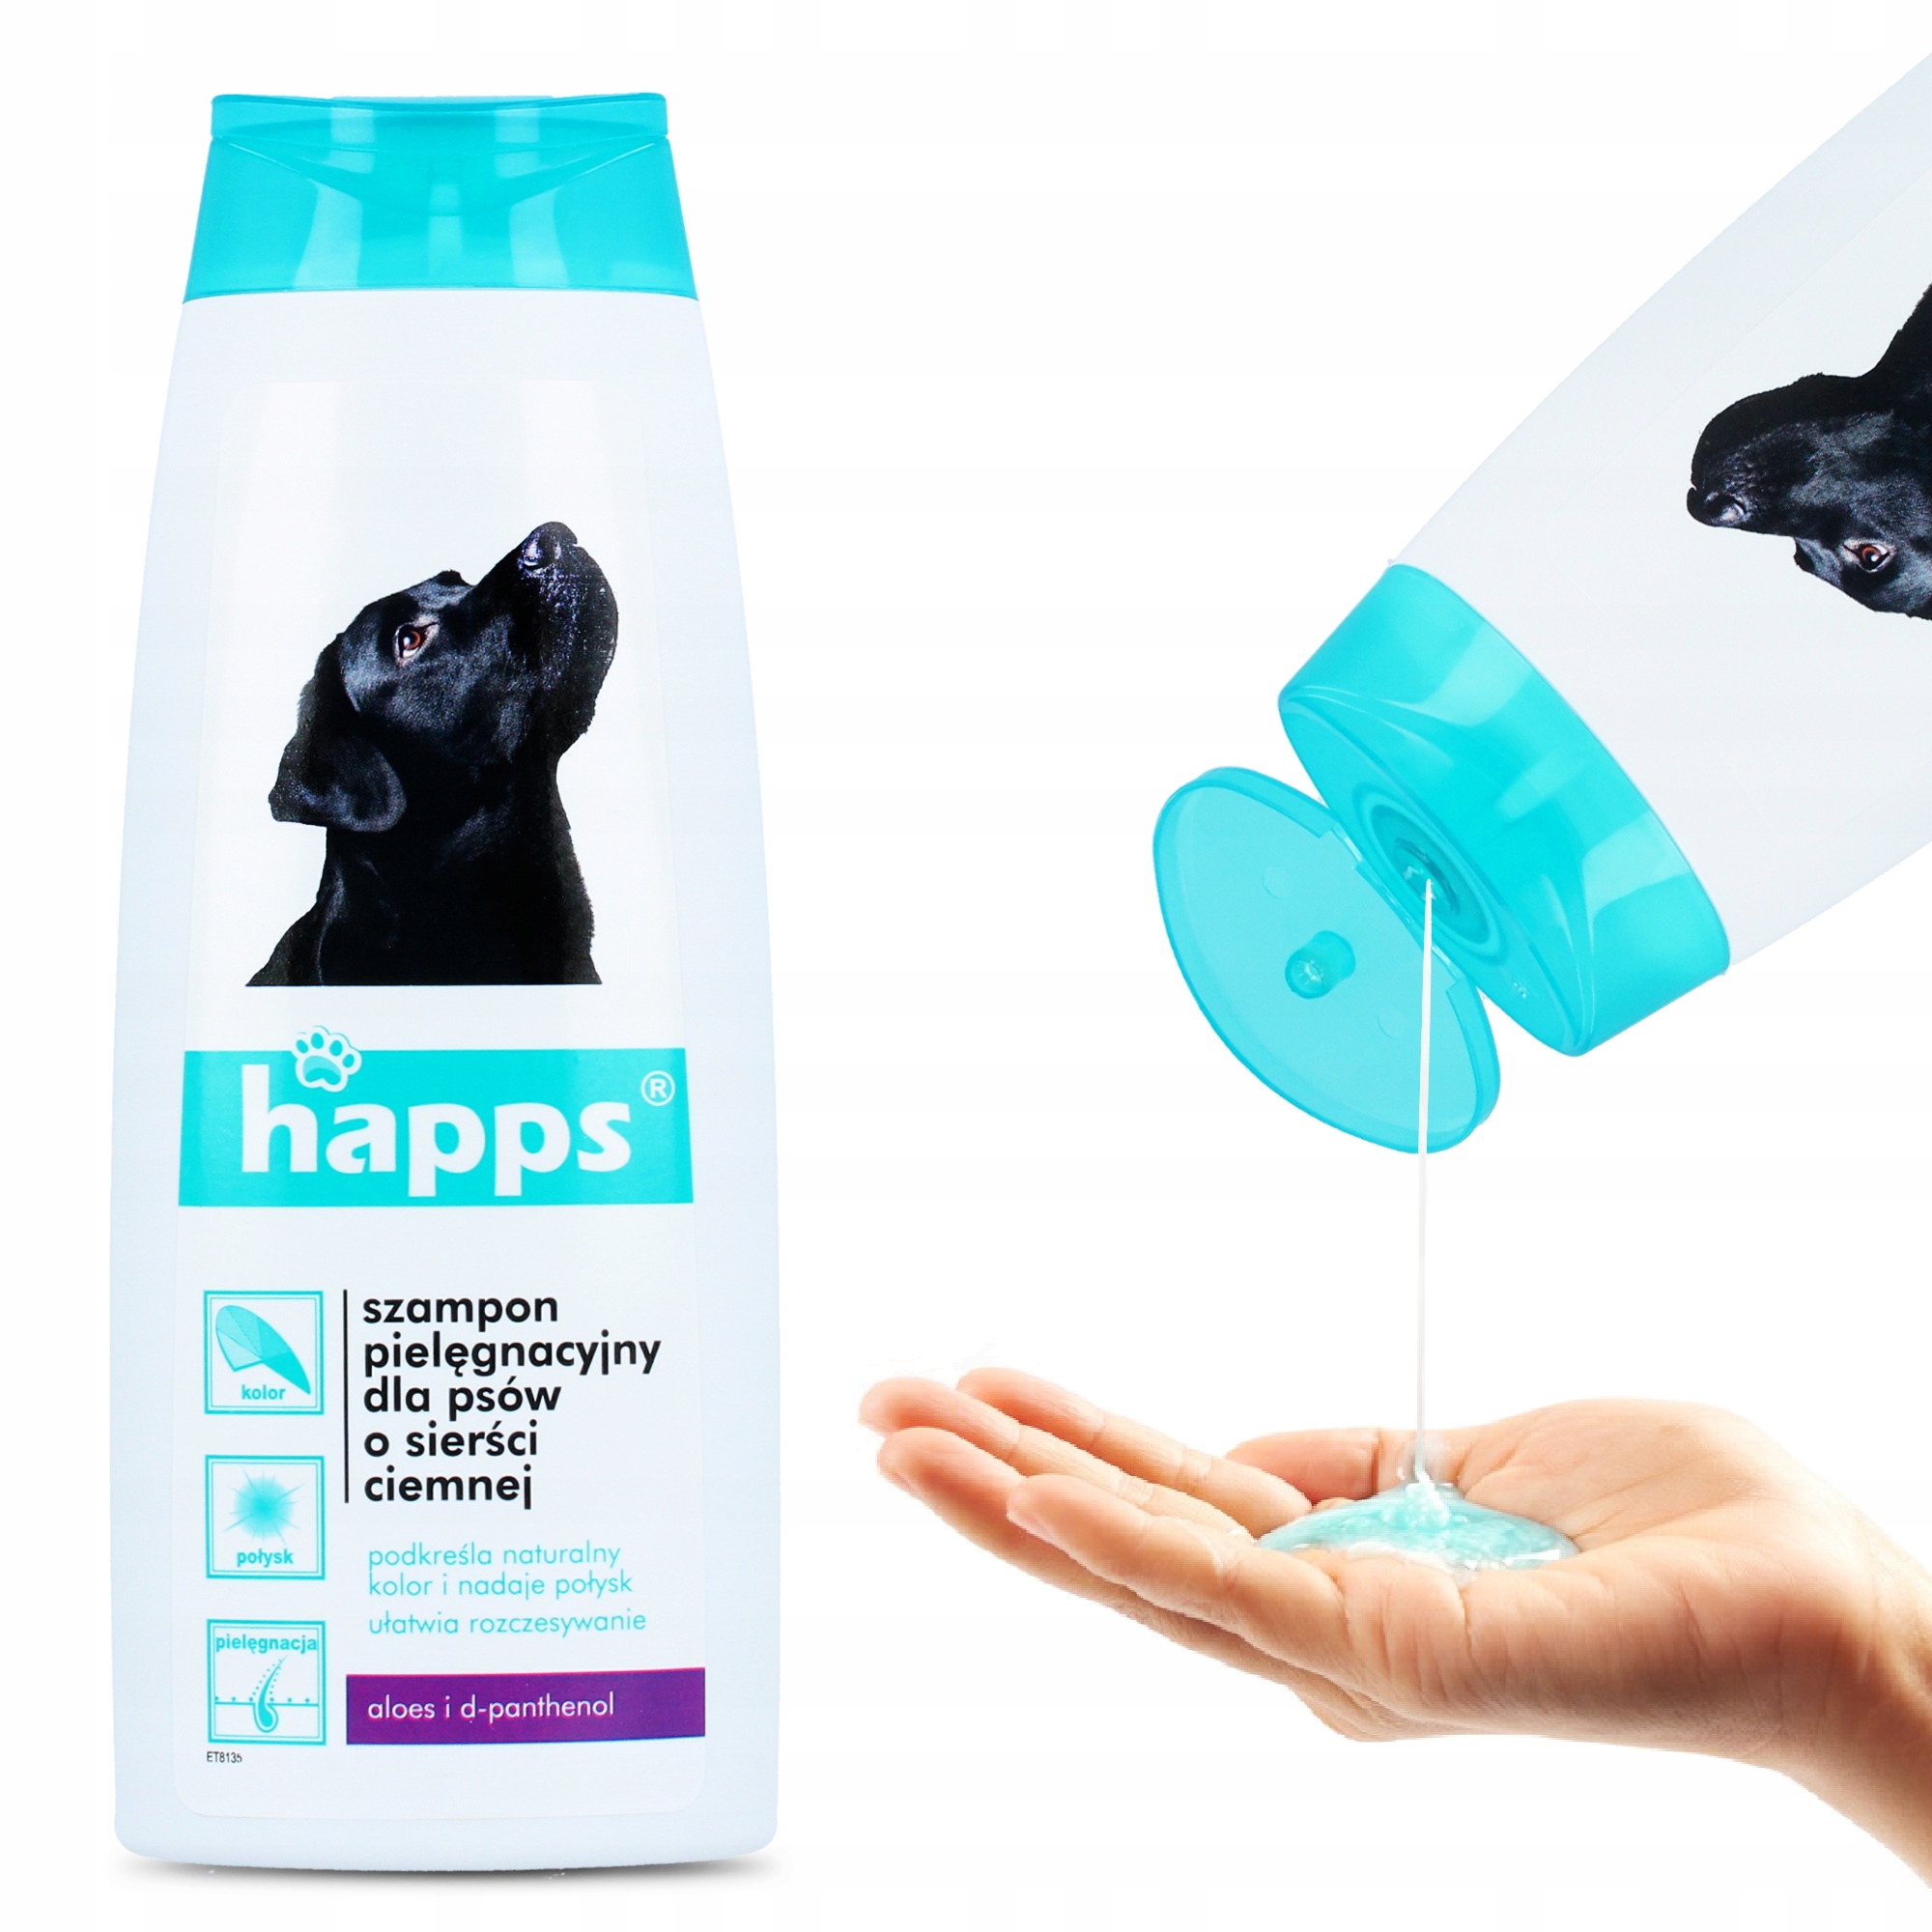 najlepszzy szampon dla psa czarnego z krótką sierścią